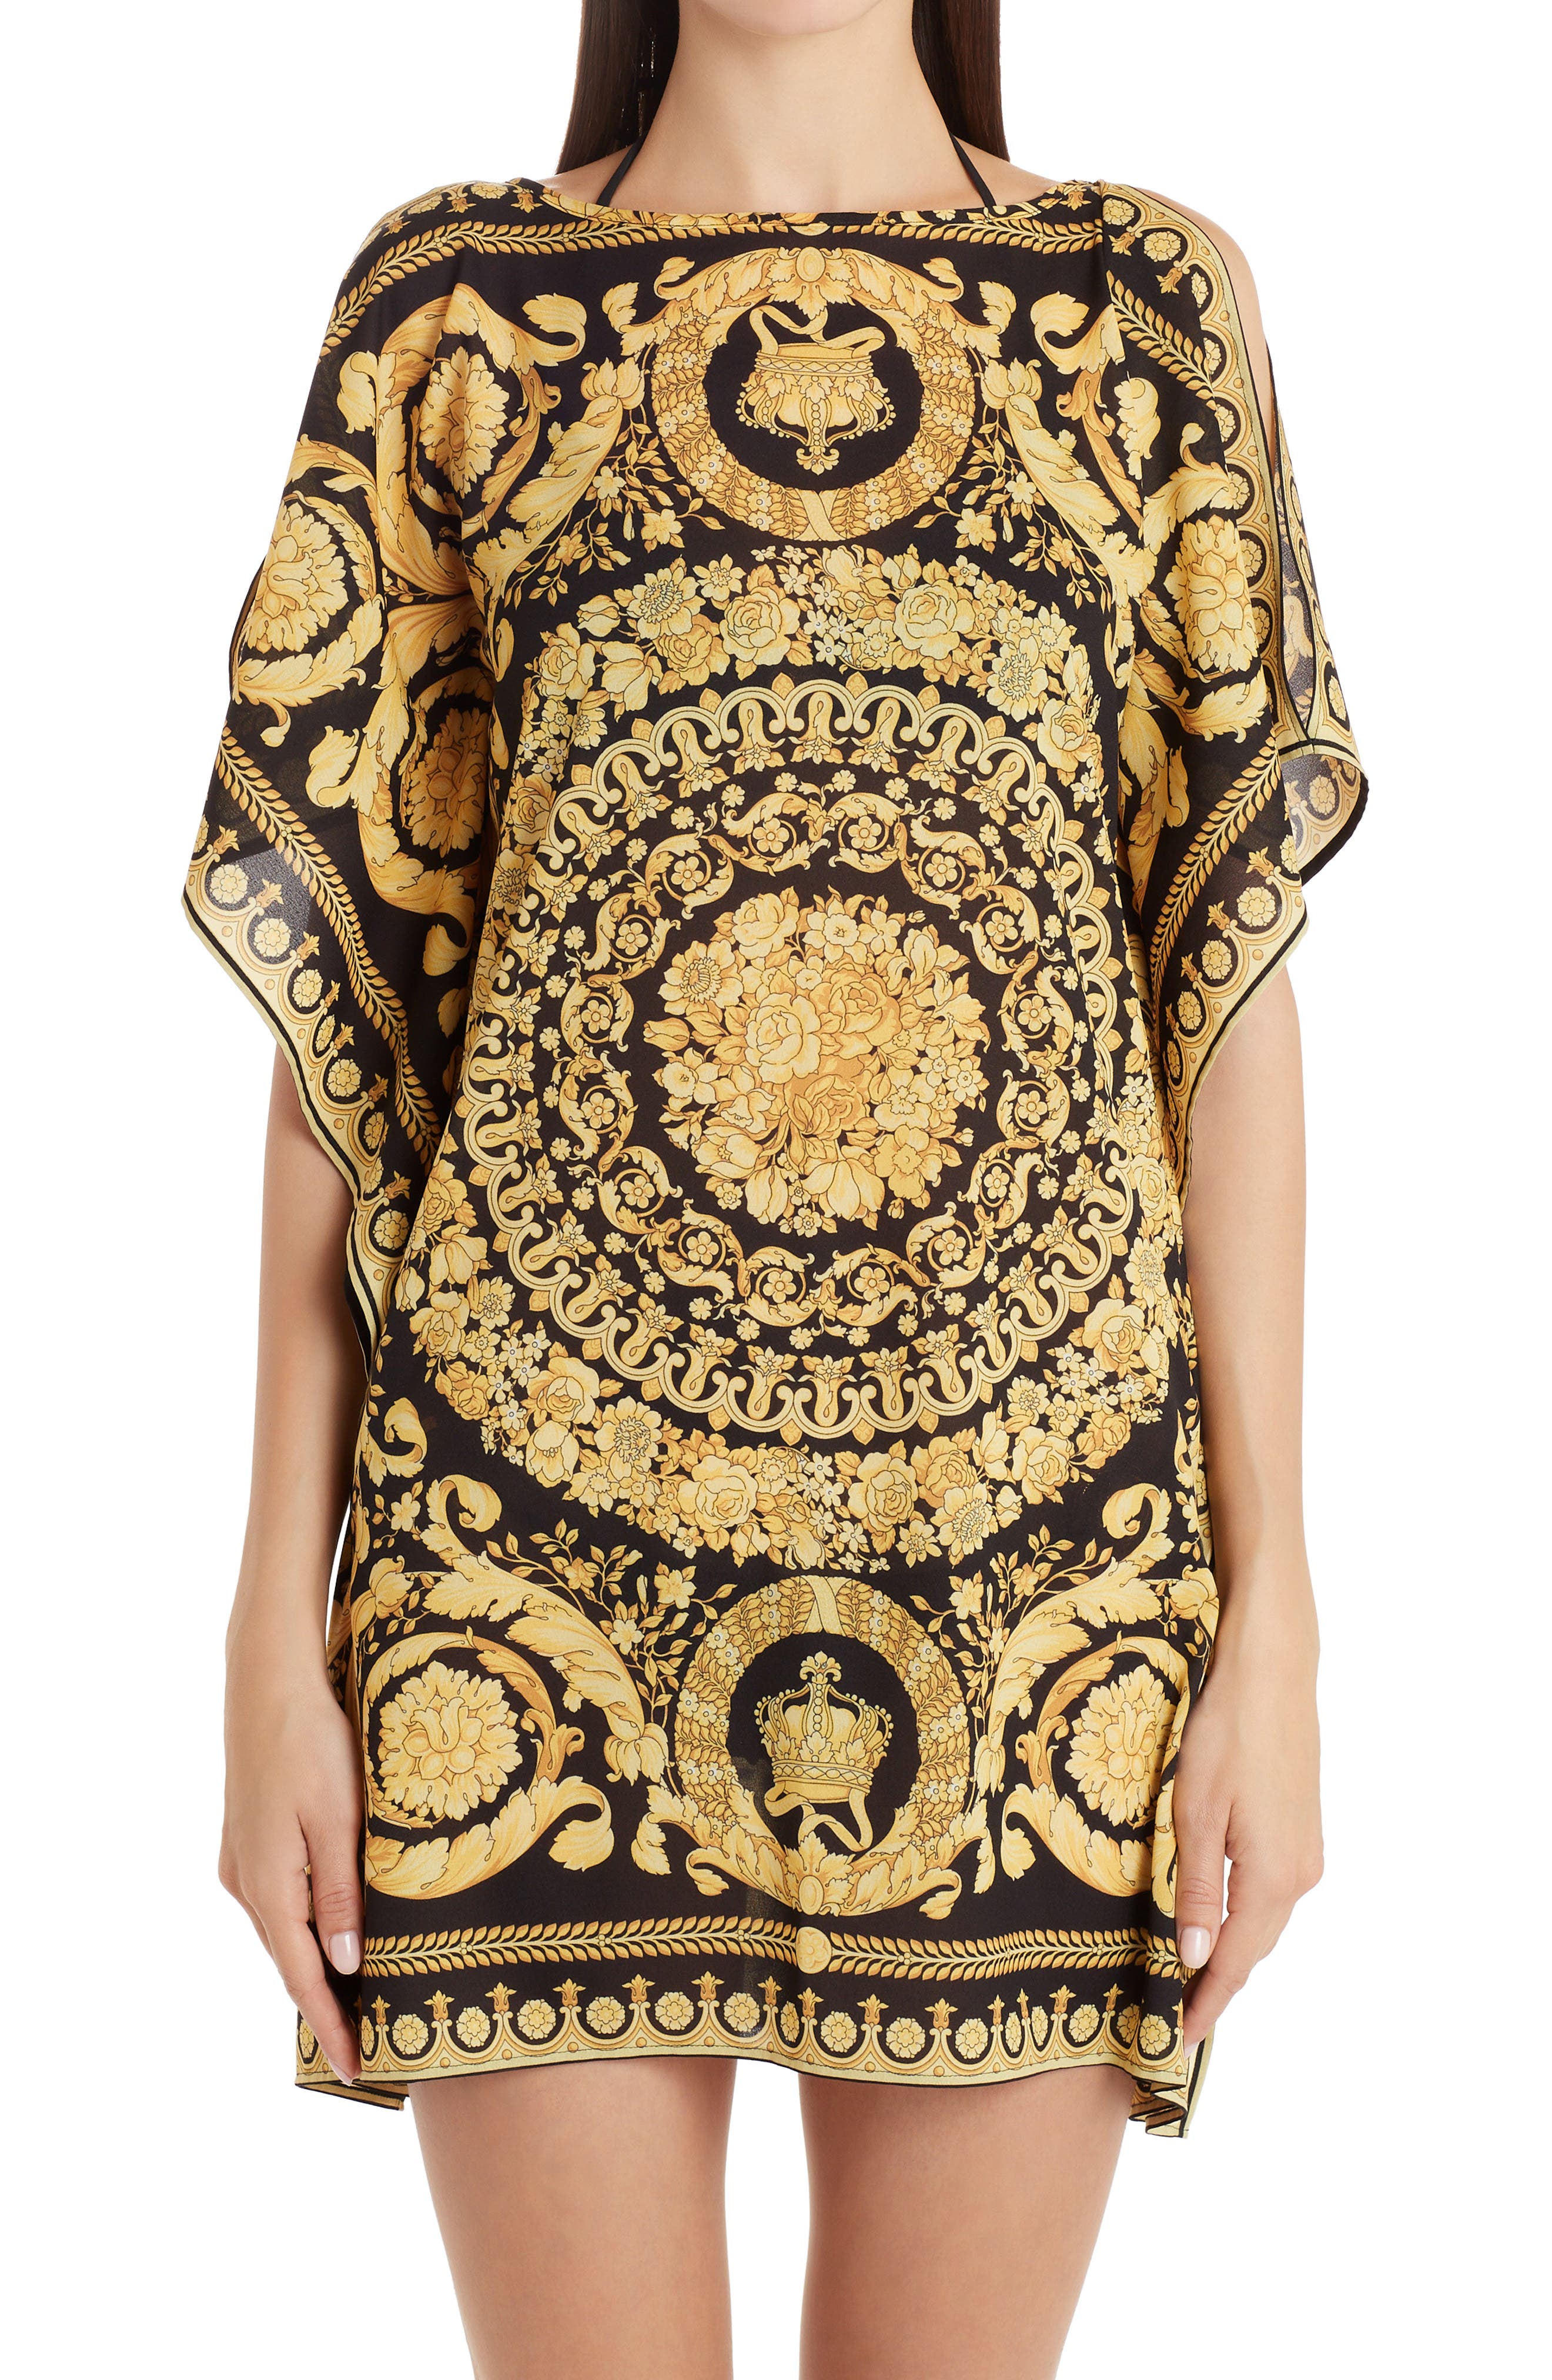 versace inspired shirt dress